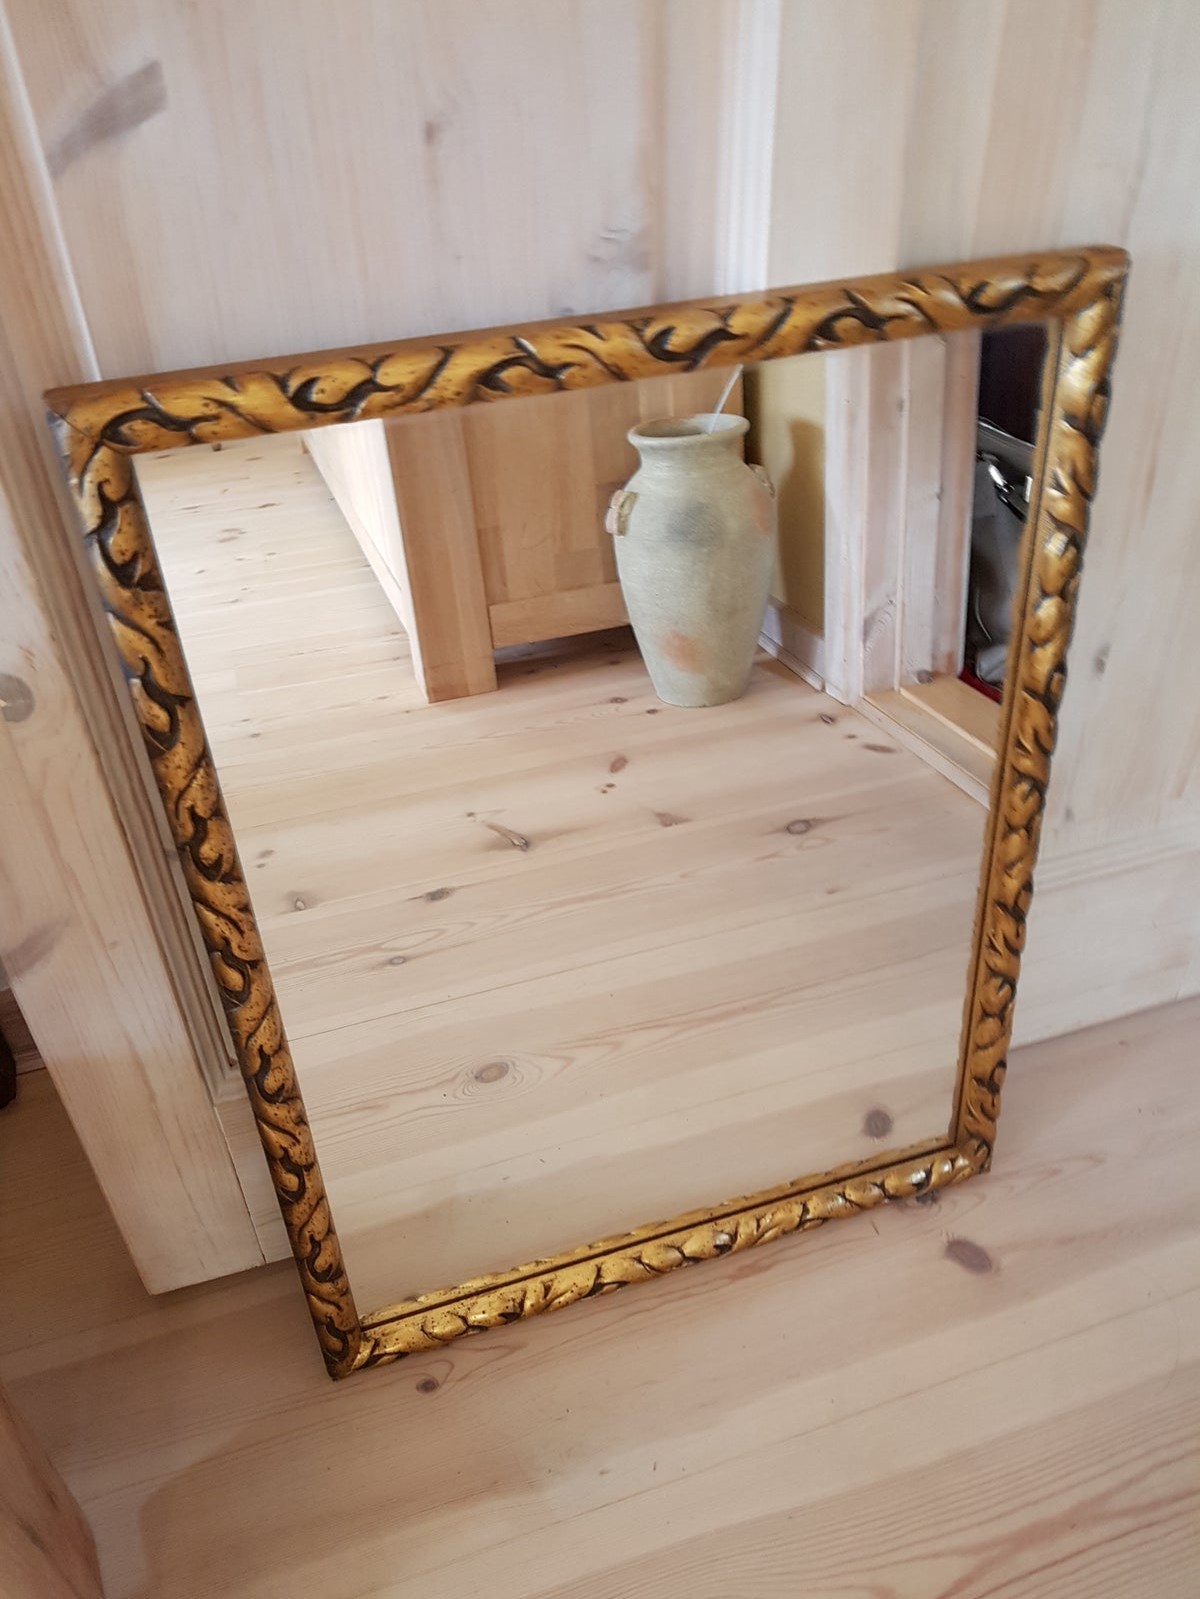 Hos Susanne i Fredericia finder du dette gamle, fine spejl med guldramme. Det kan blive dit for 150 kroner.